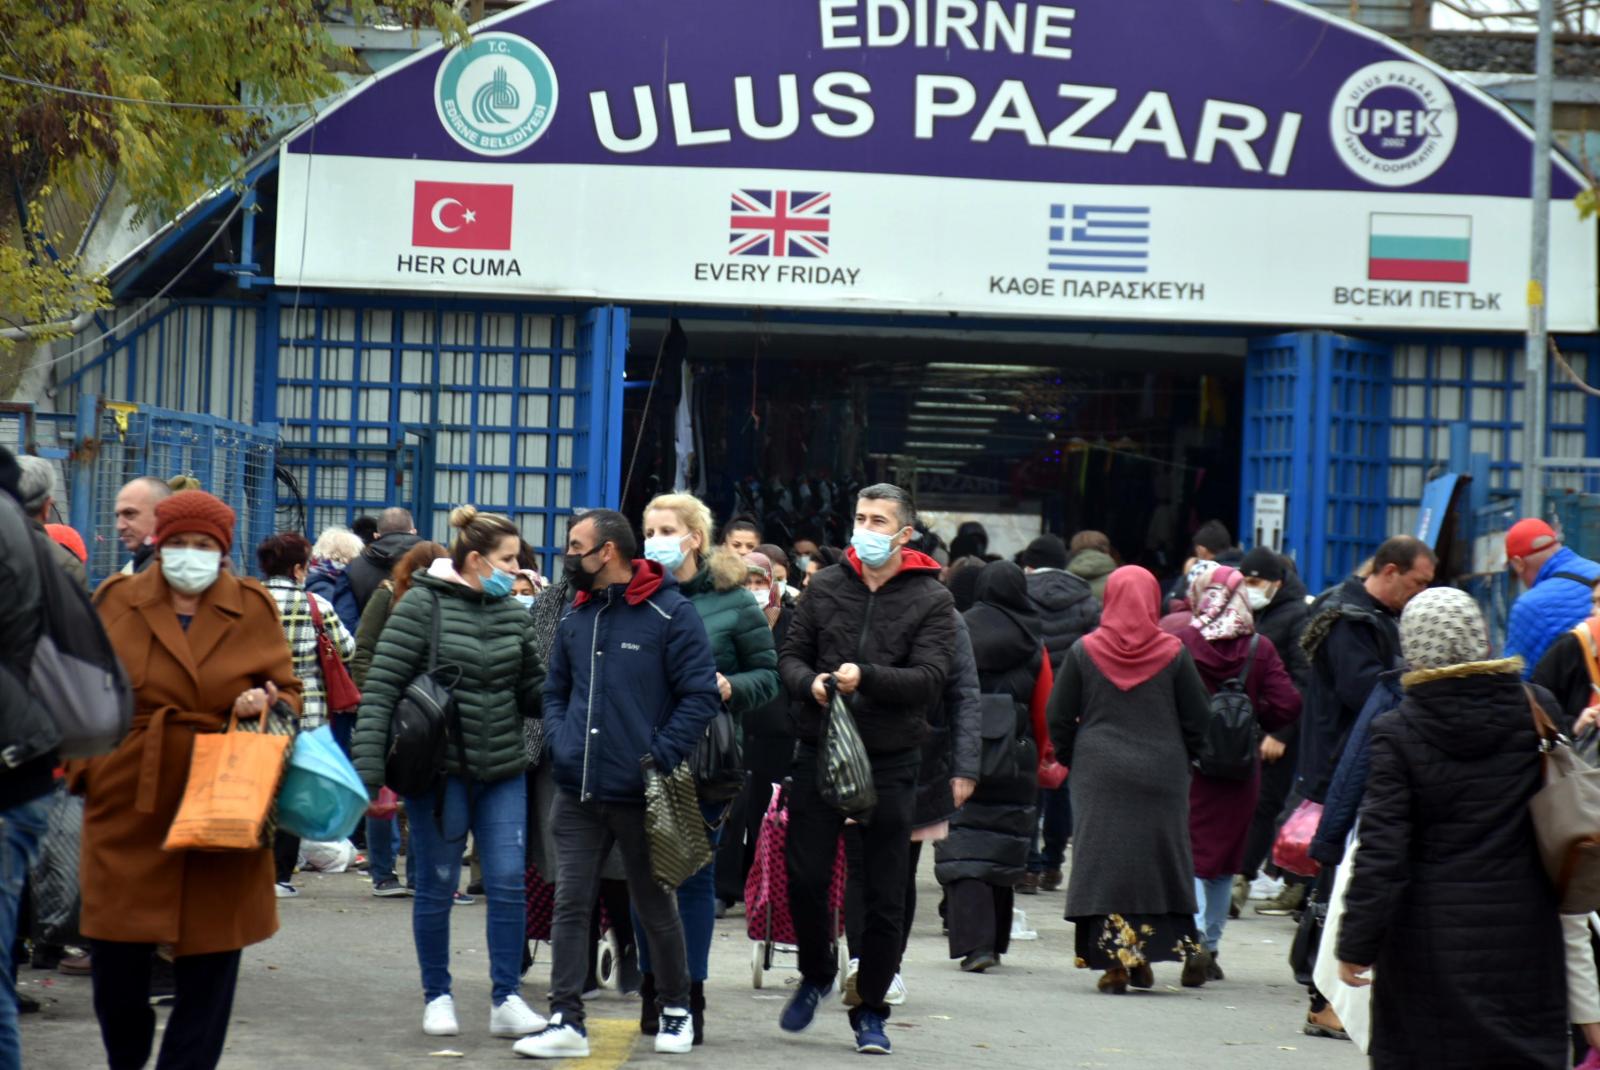 Edirne’ye alışveriş için 1 milyon Bulgaristanlı turist geldi